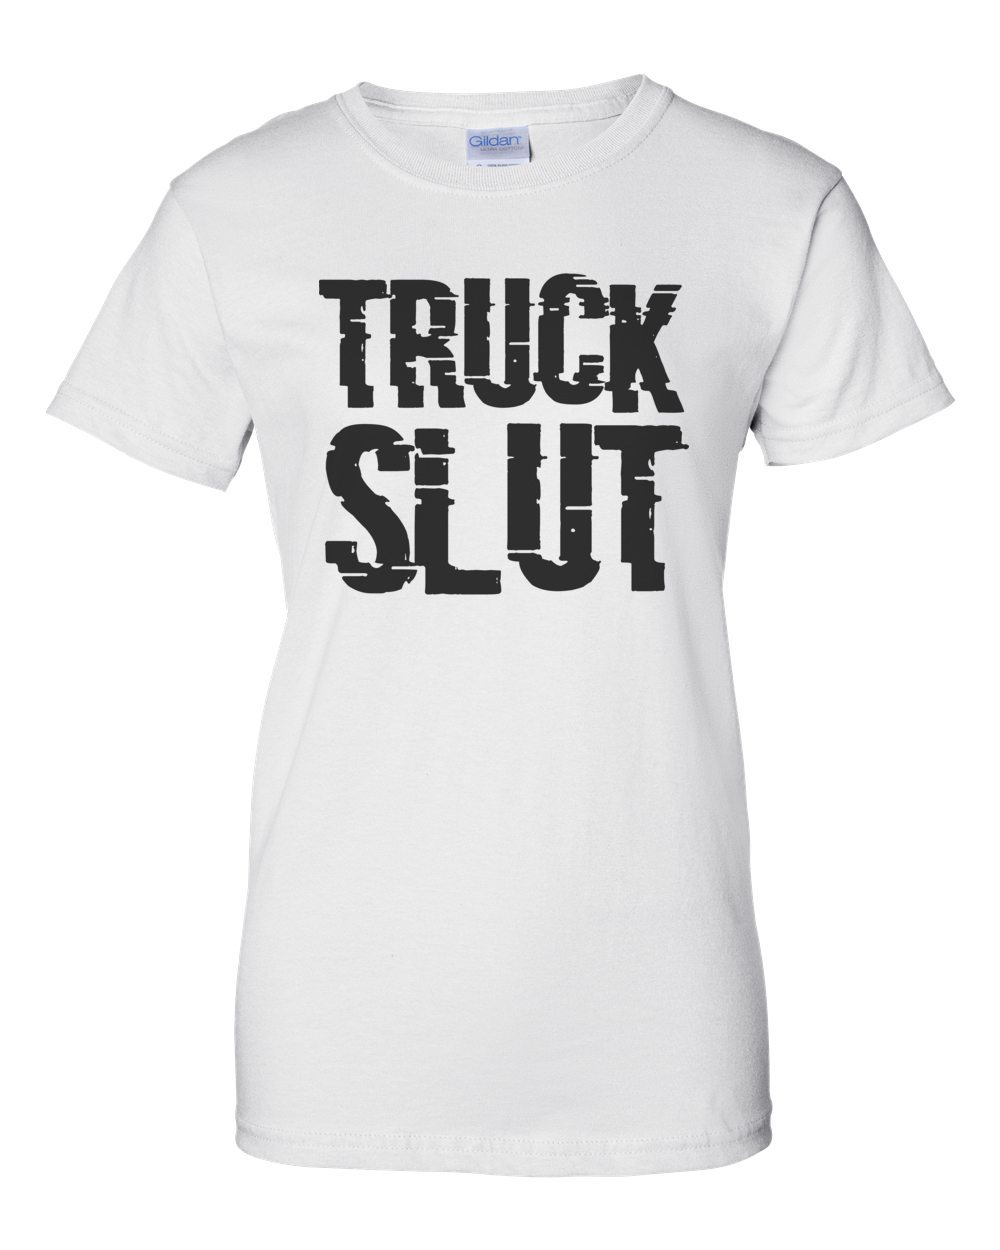 Slut the truck 